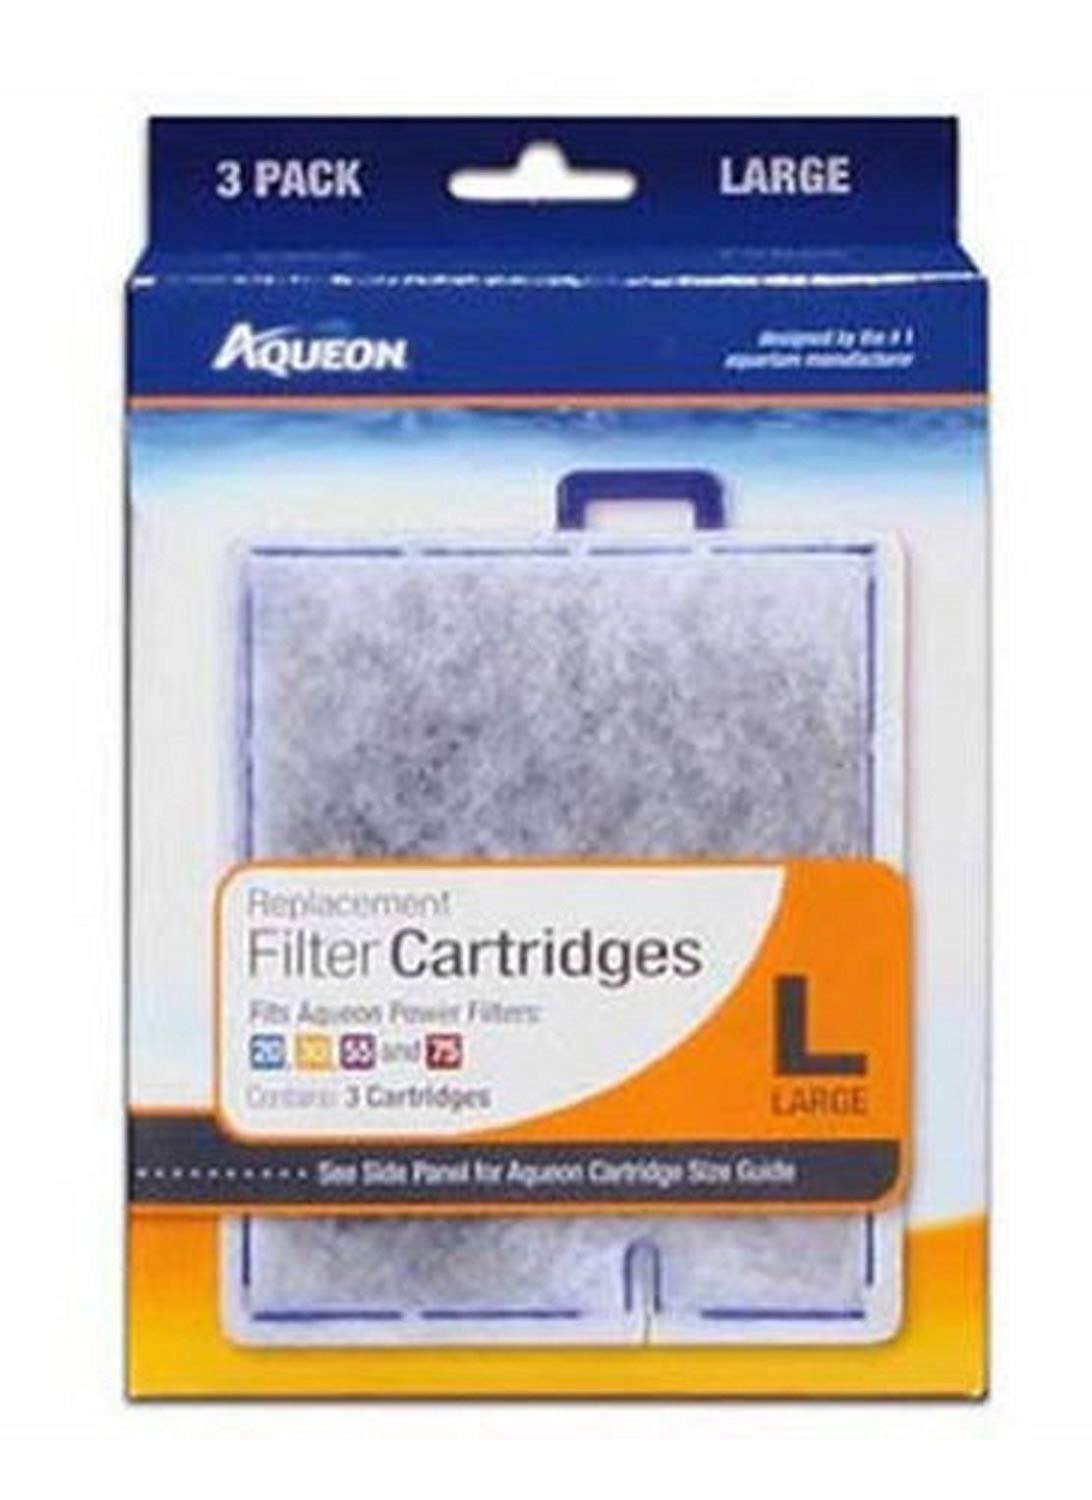 Aqueon Replacement Filter Cartridge Large 3pk, Aqueon